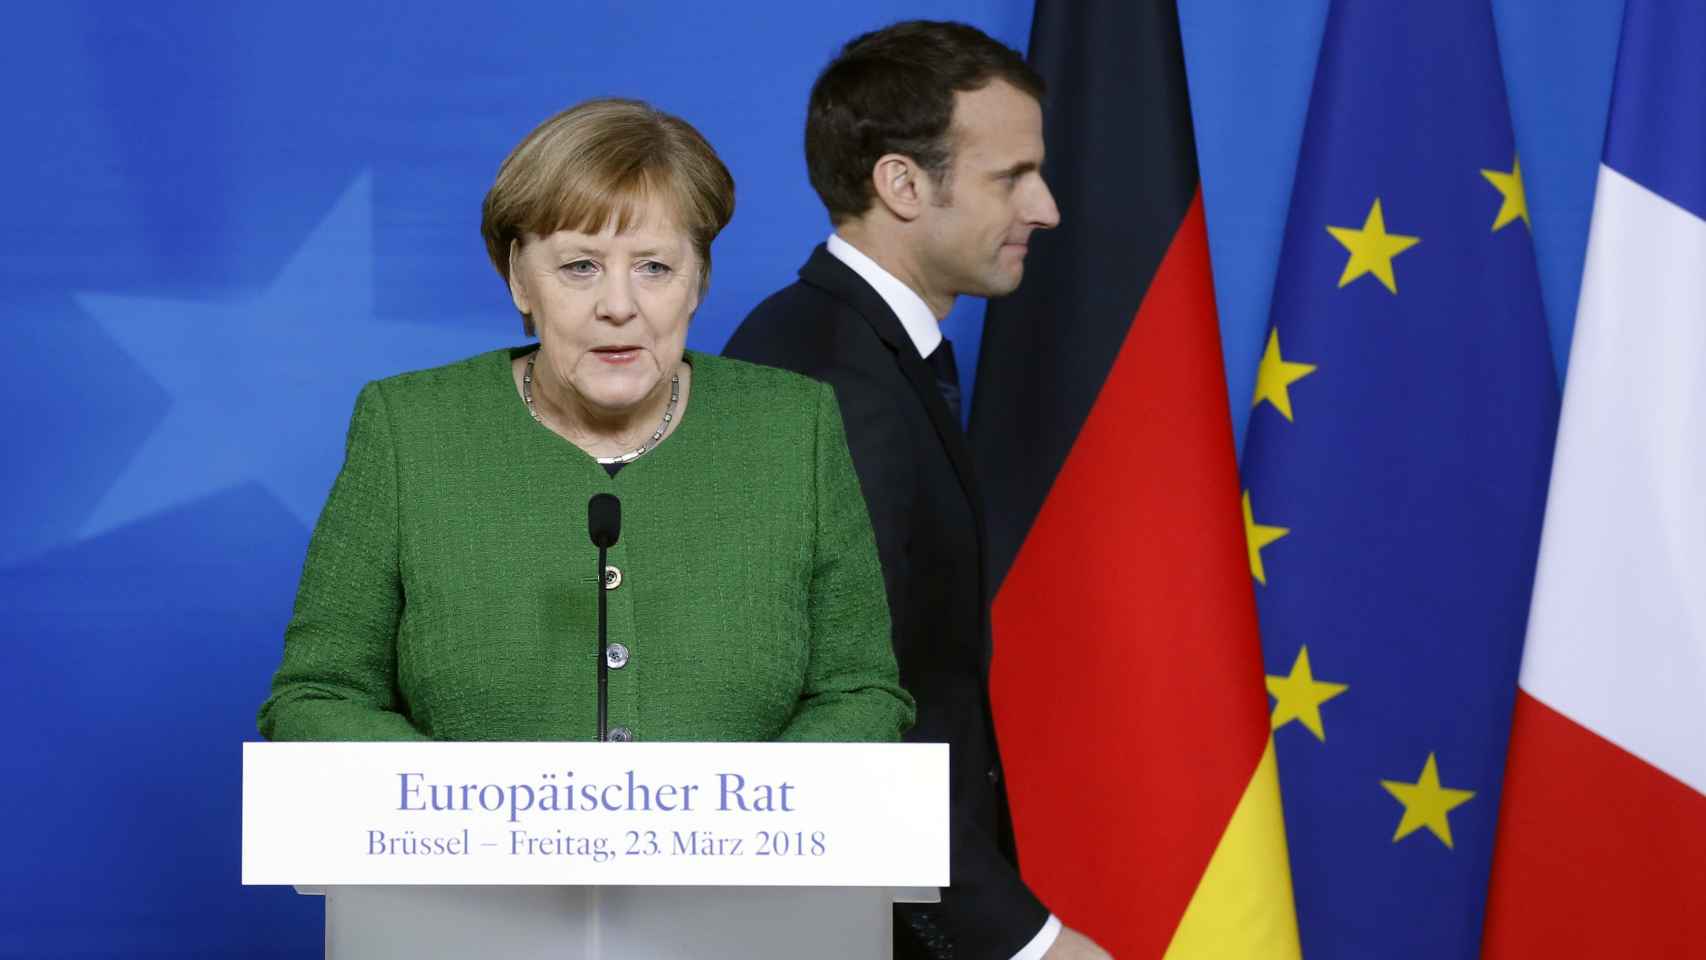 La canciller Merkel y el presidente Macron han dado una rueda de prensa conjunta